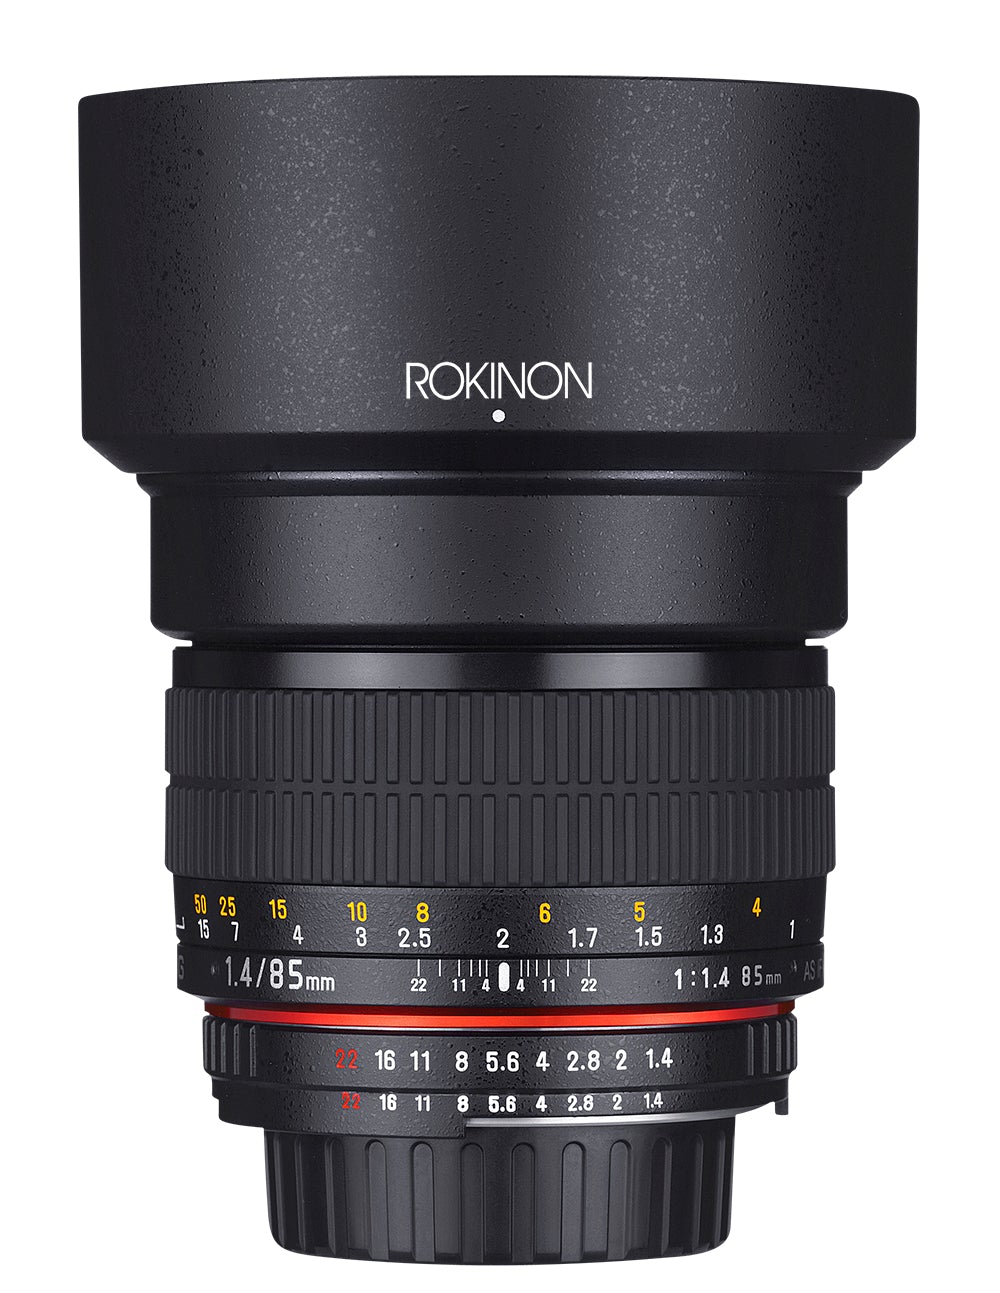 Rokinon 85mm F1.4 Full Frame Lens - image 1 of 8